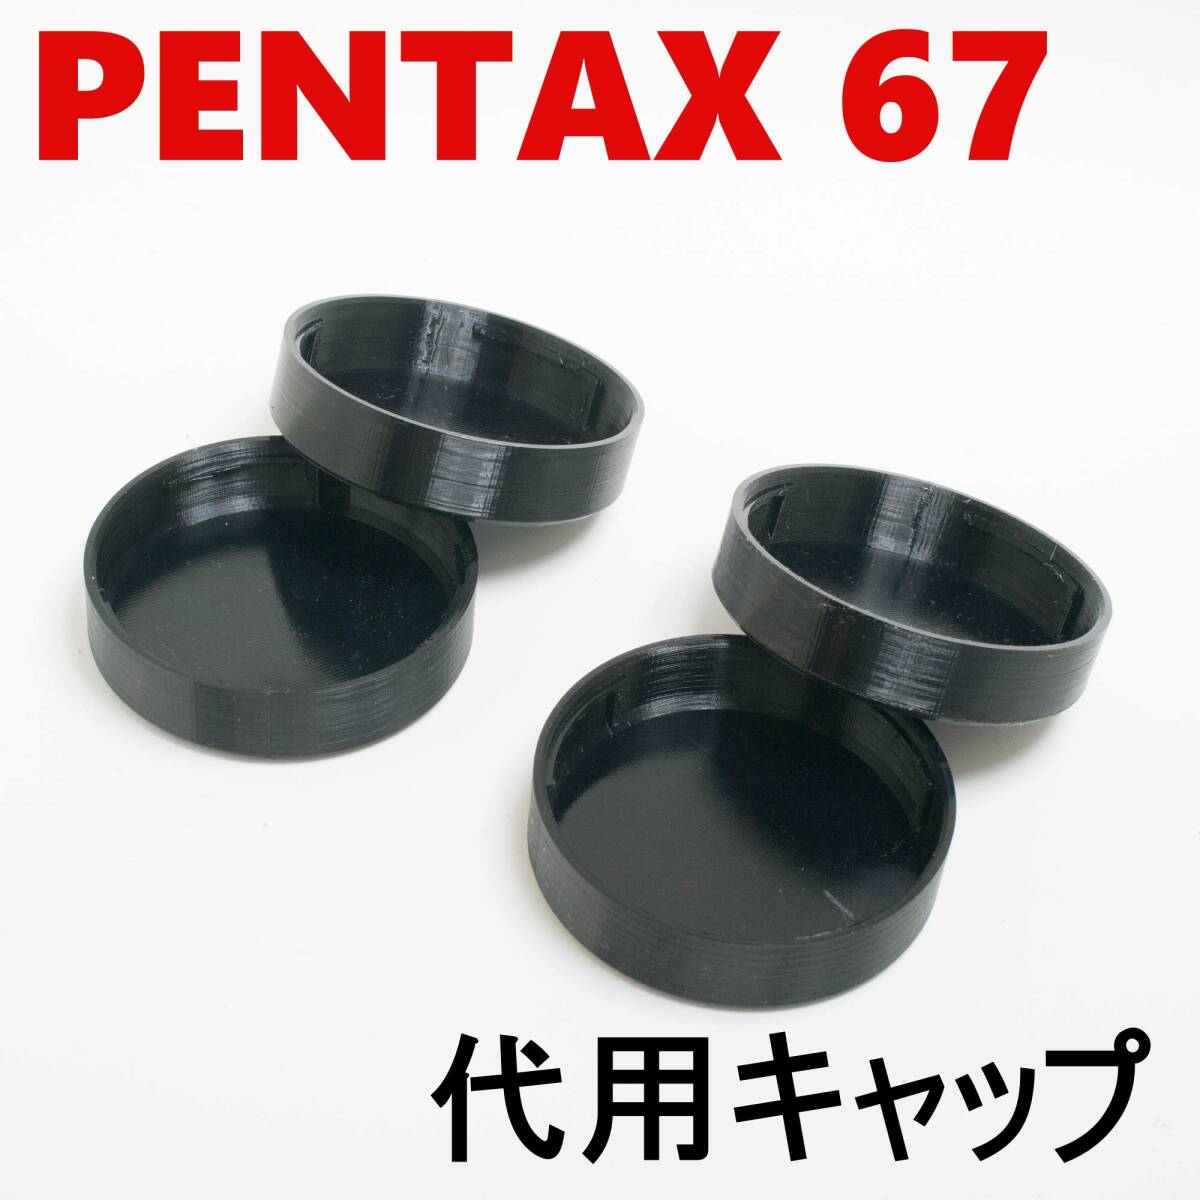 ペンタックス67 6x7 代用レンズリアキャップ 4個 セット_画像1